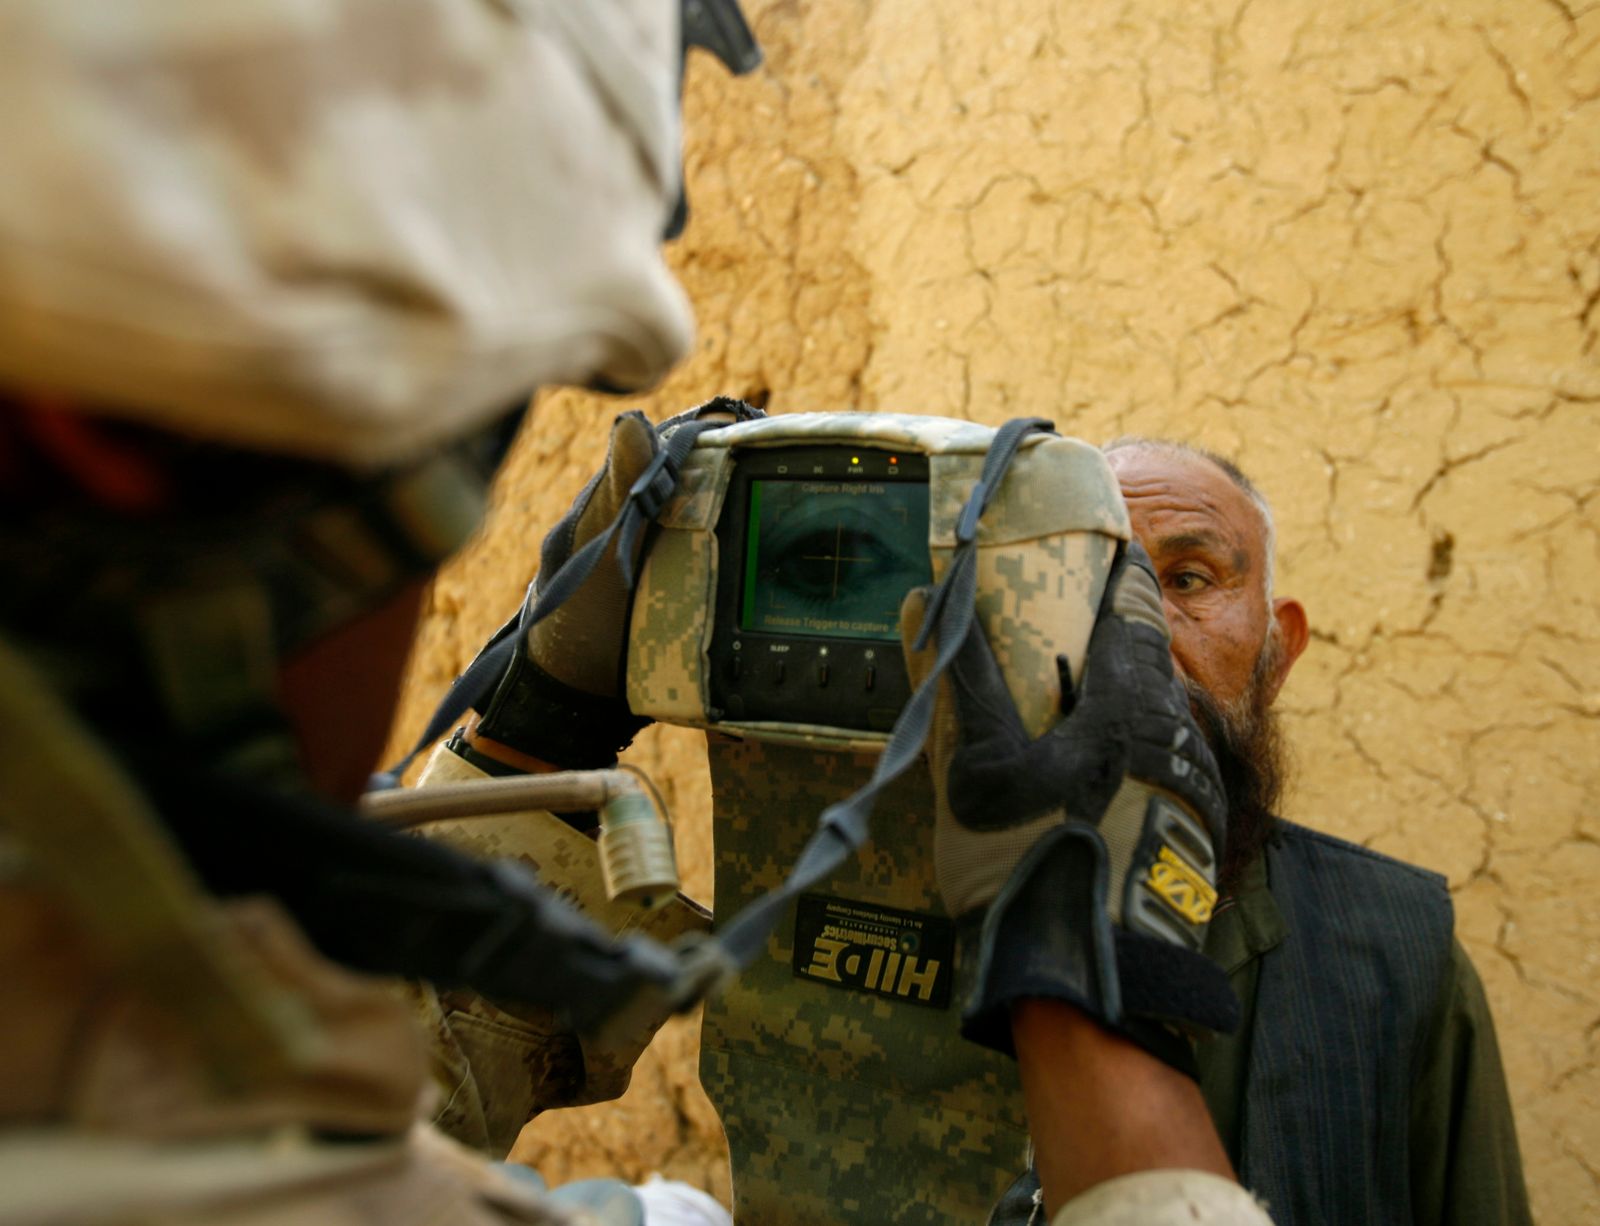 جندي من مشاة البحرية الأميركية في ليما يجري مسحًا للعين بكاميرا HIIDE في ولاية هلمند الأفغانية. 11 أبريل 2010. - REUTERS